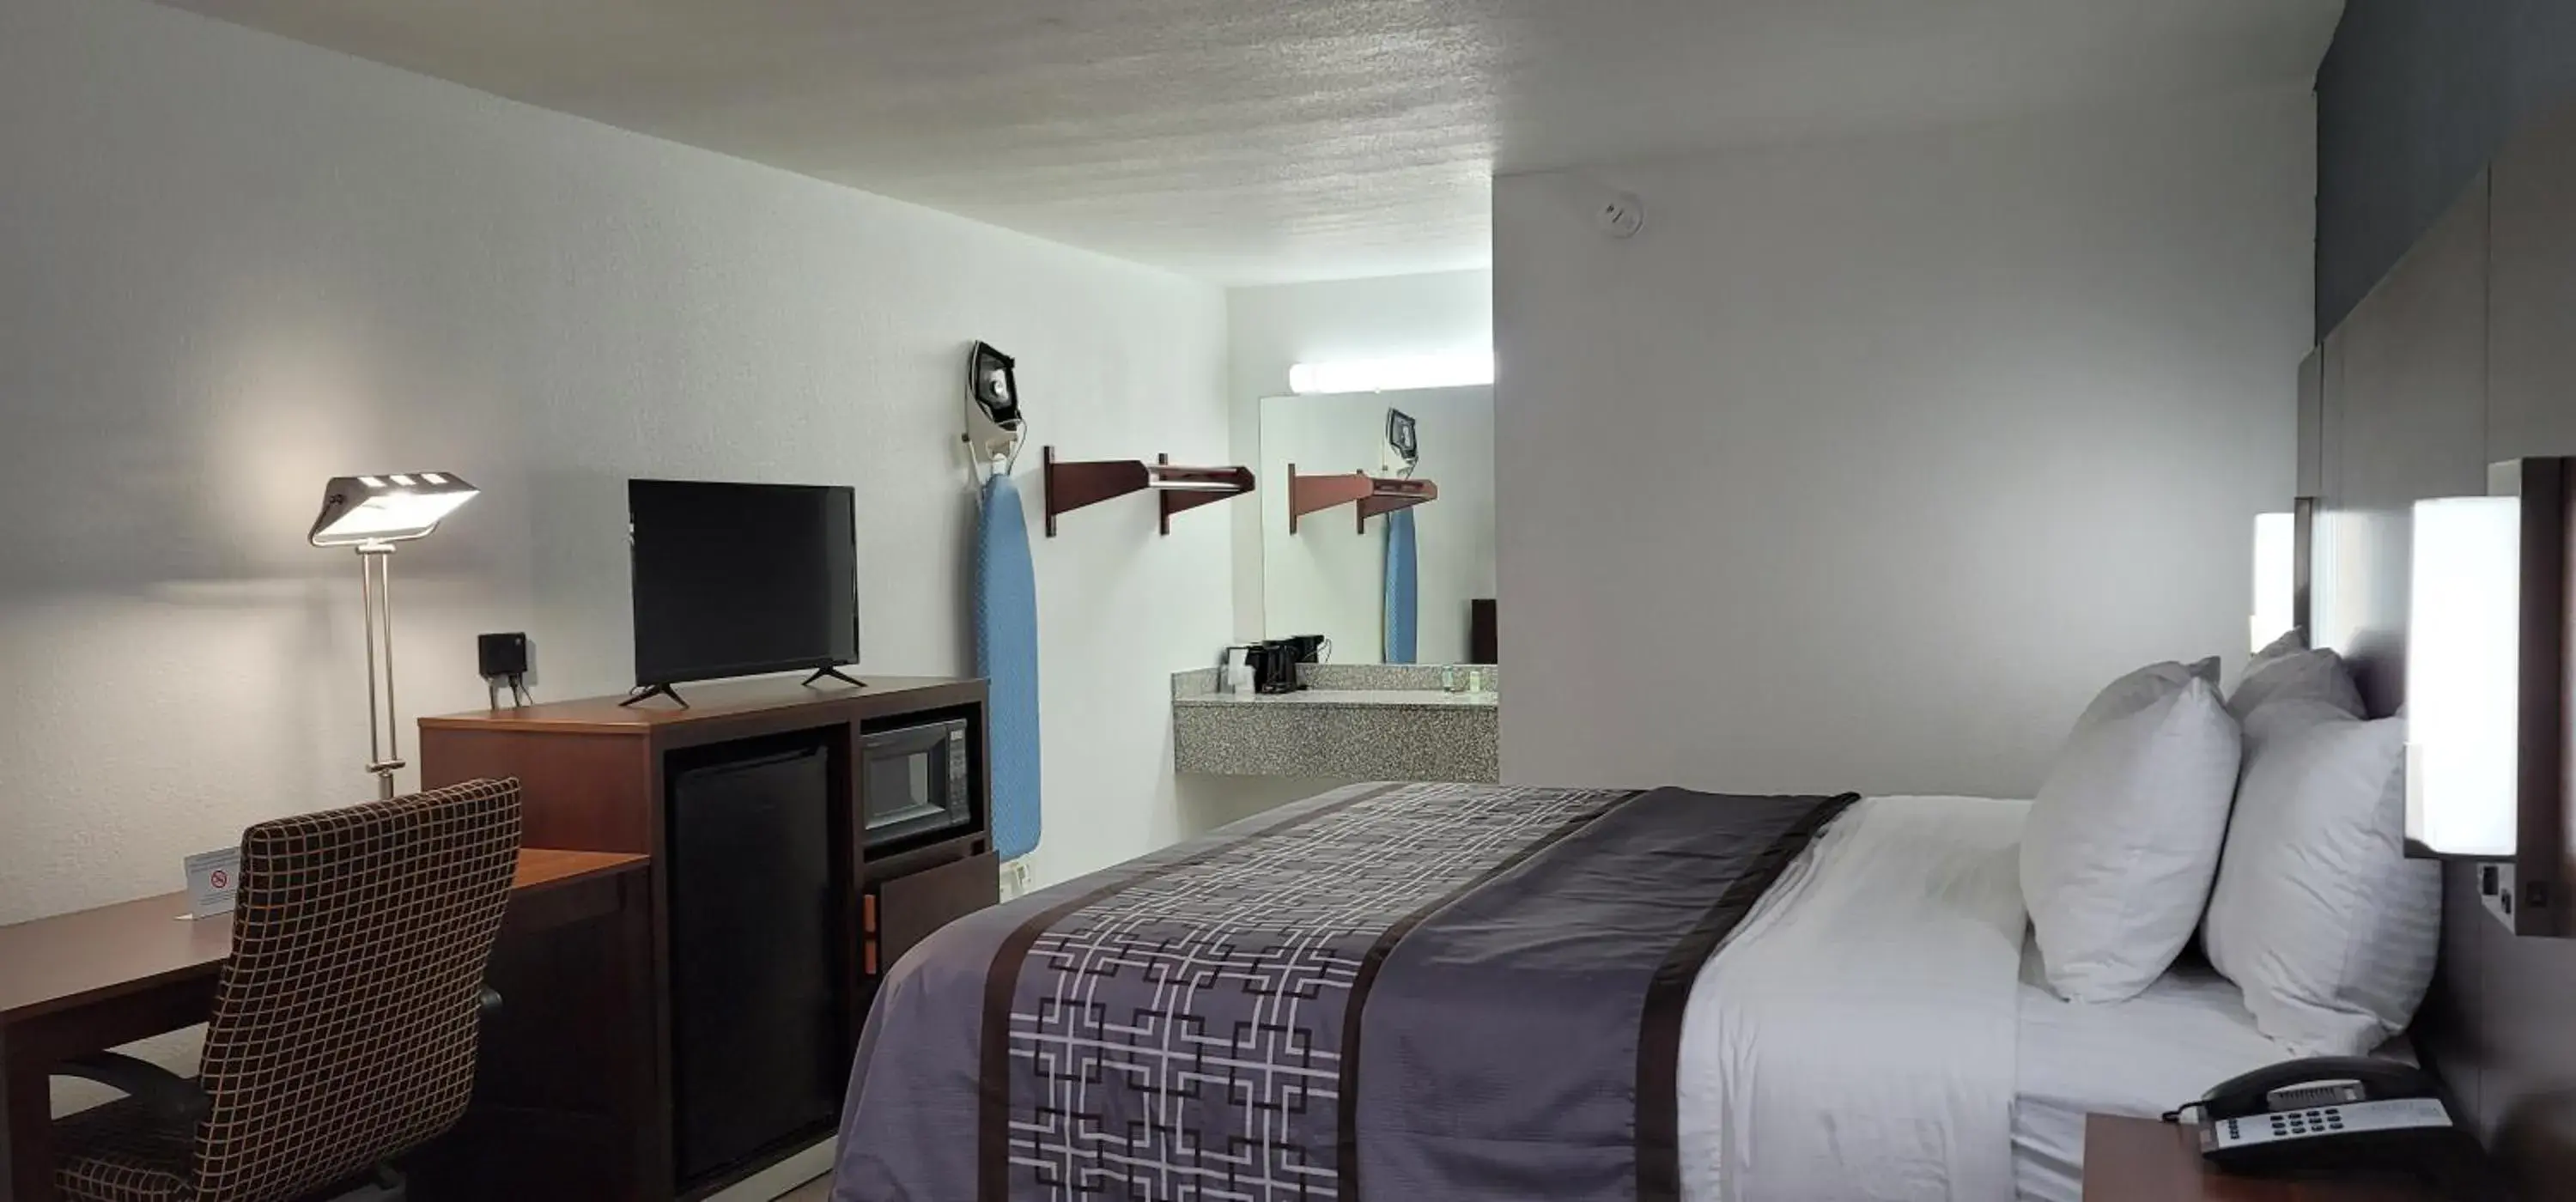 Bed in Key West Inn - Boaz